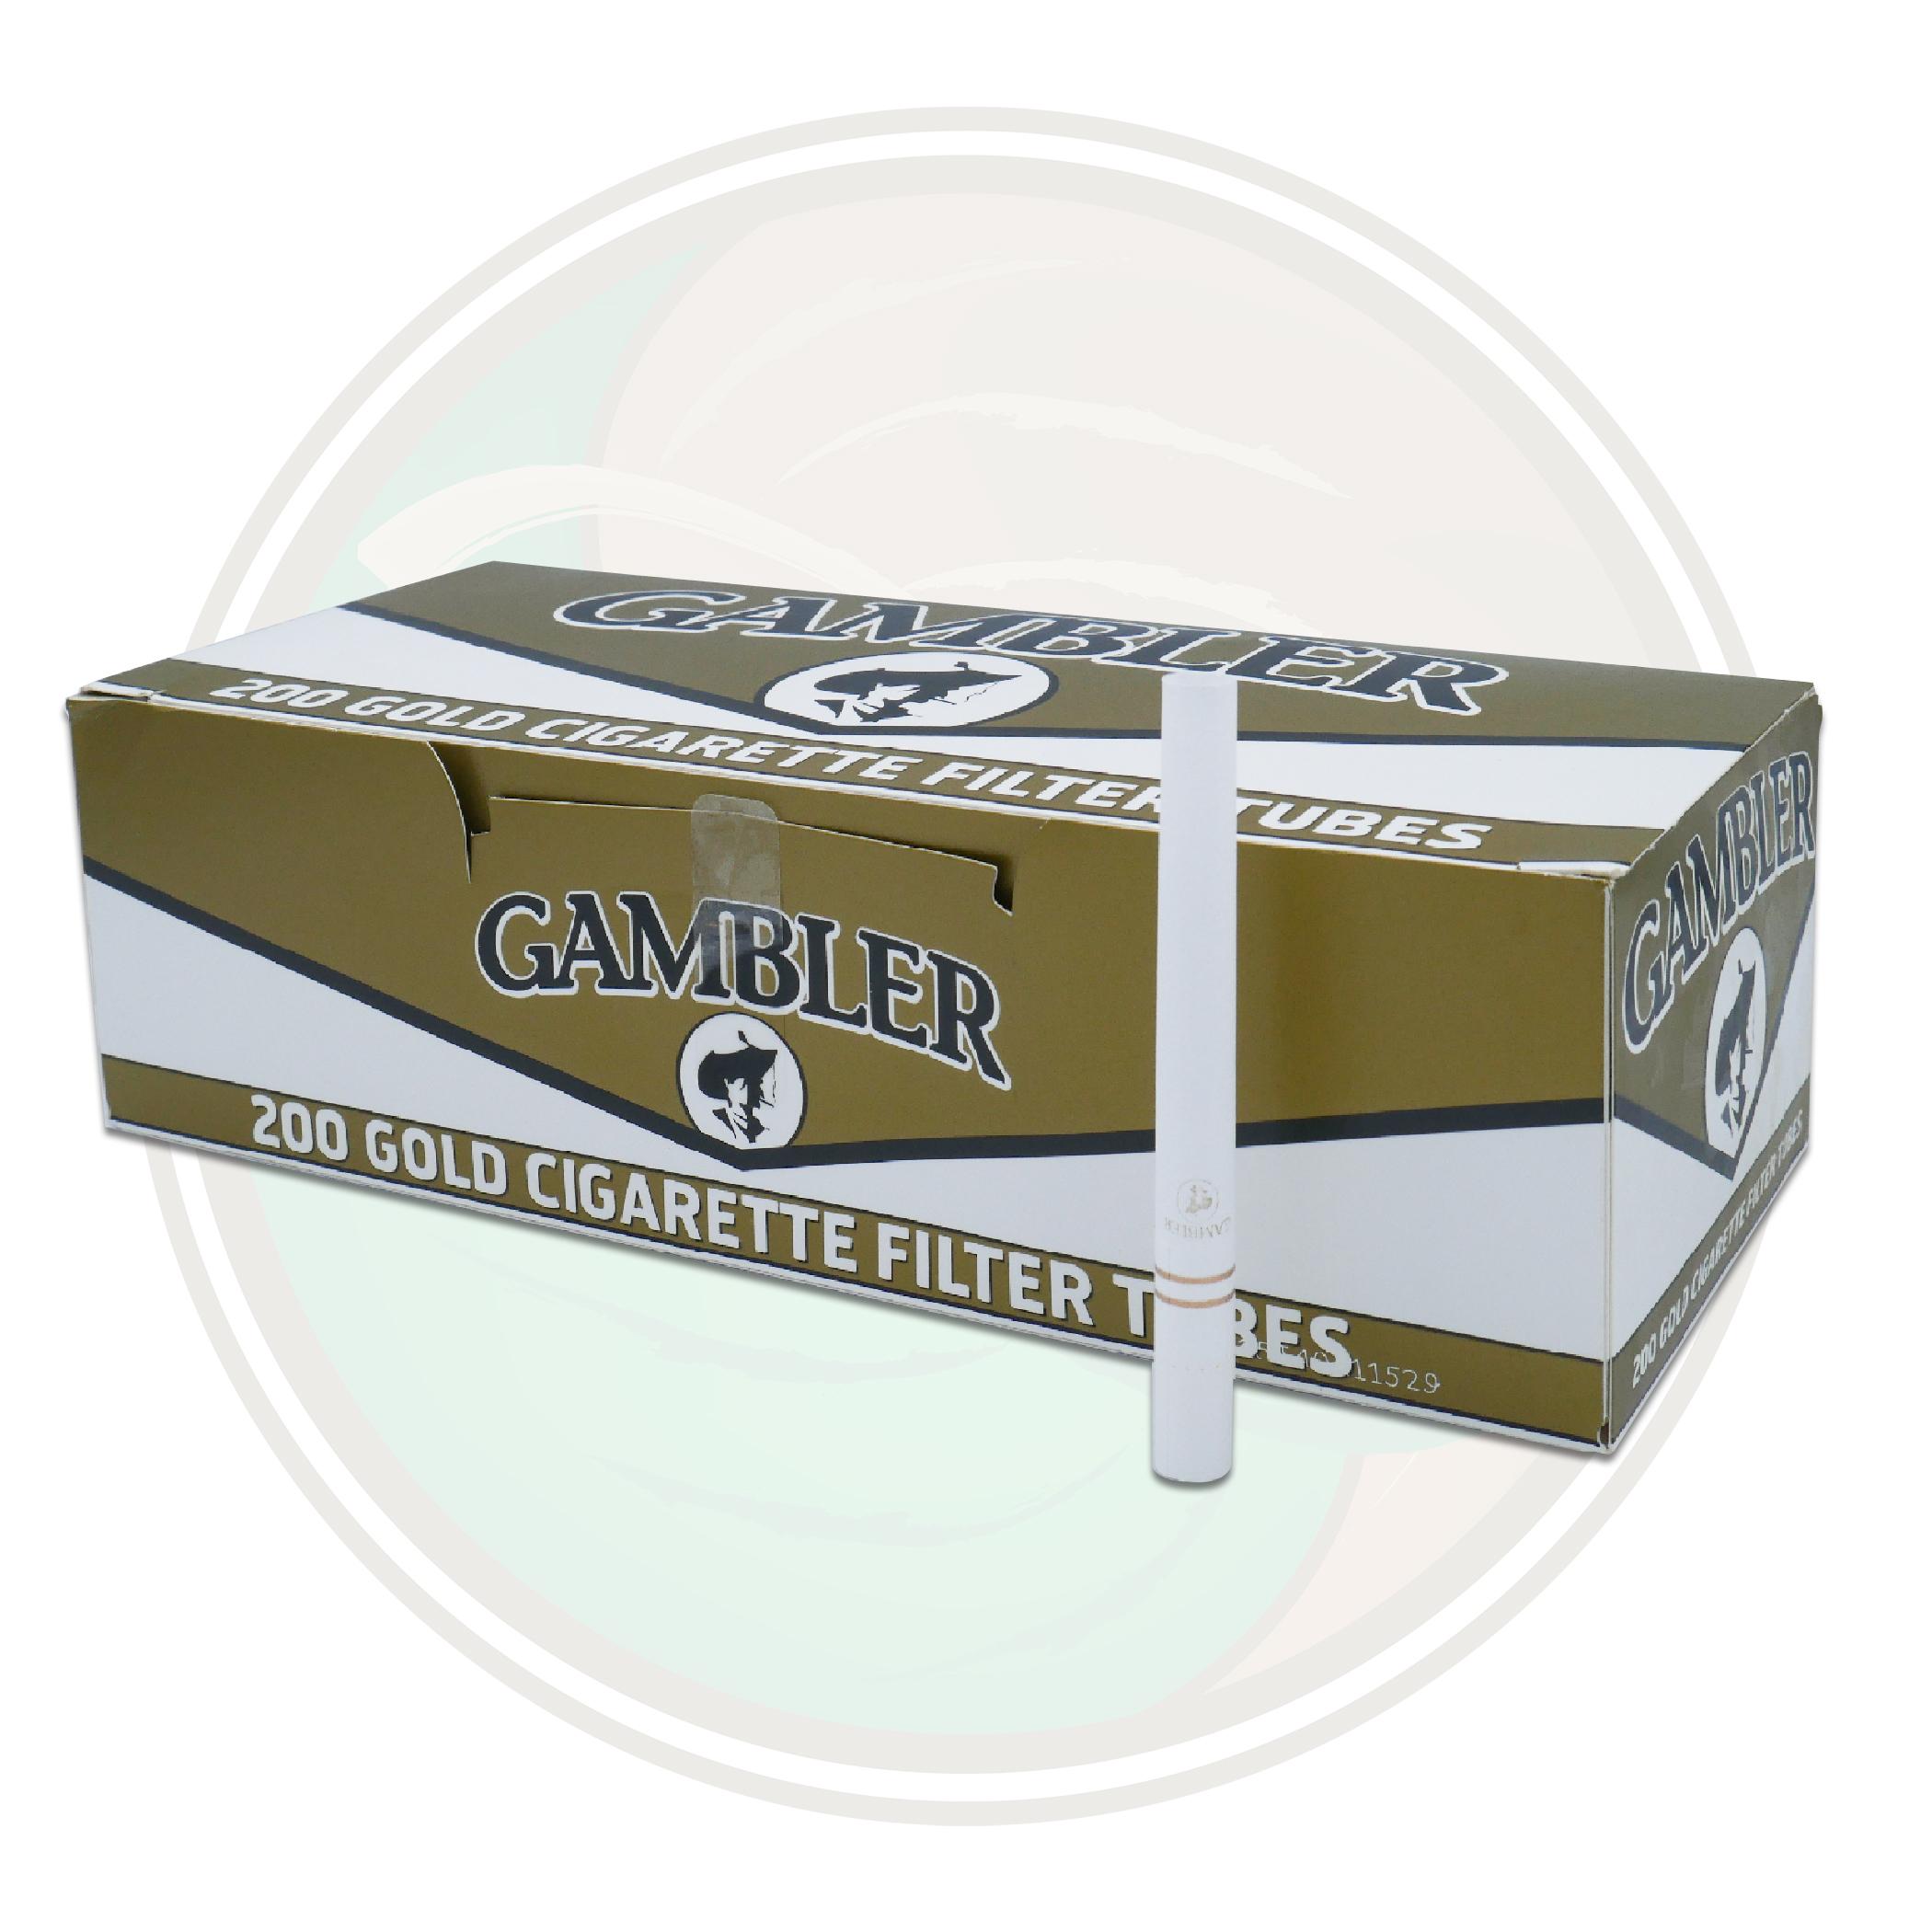 Buy Gambler Tube Cut Cigarette Filter Tubes- 5 Cartons of 200